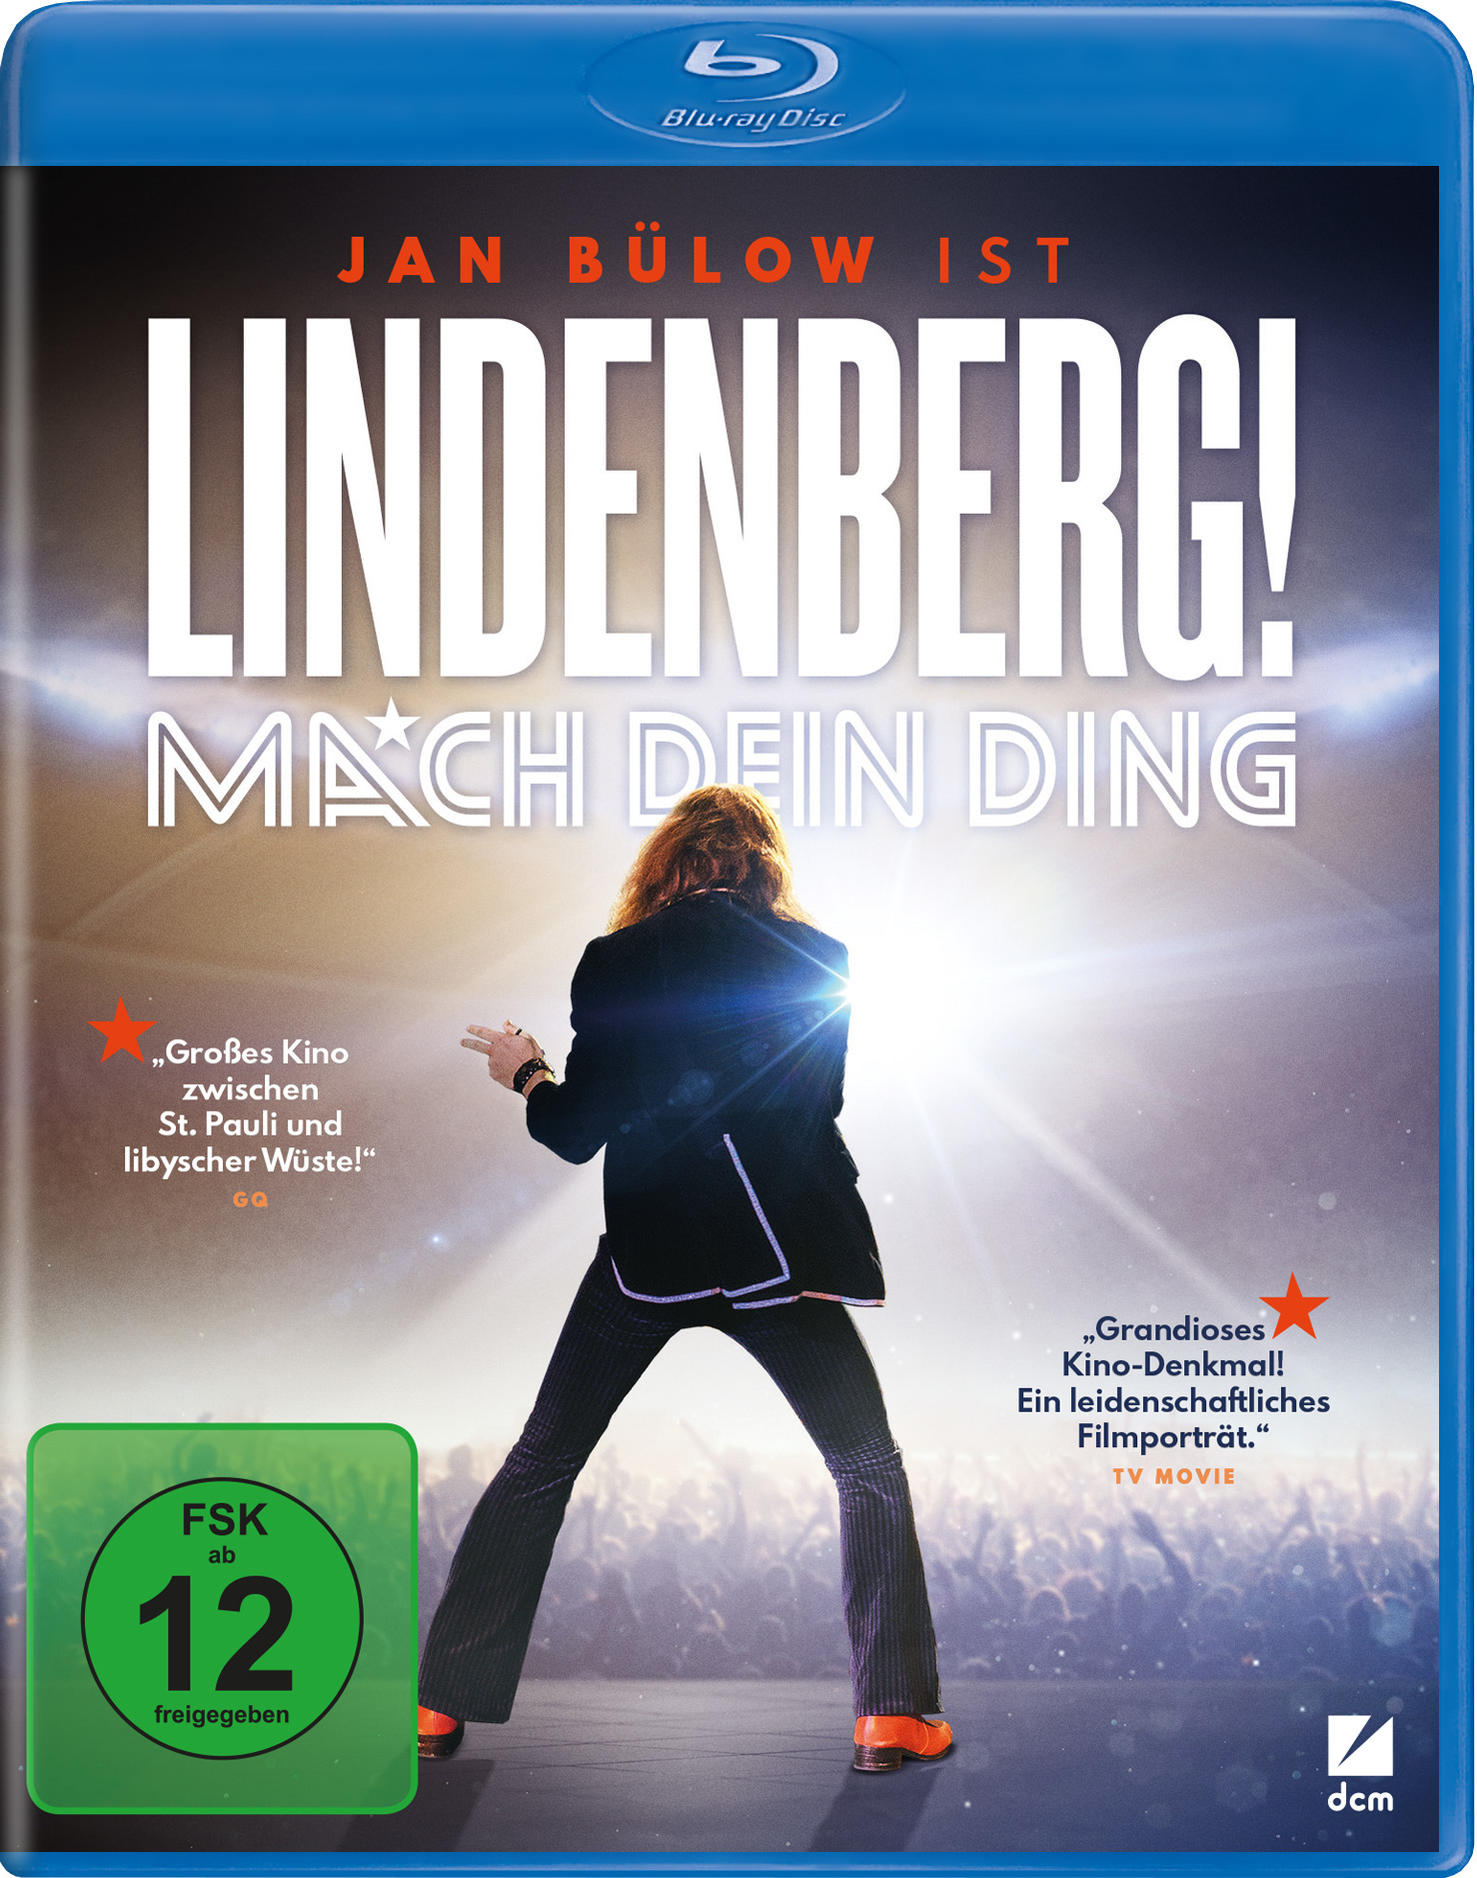 Mach Lindenberg! dein Ding Blu-ray